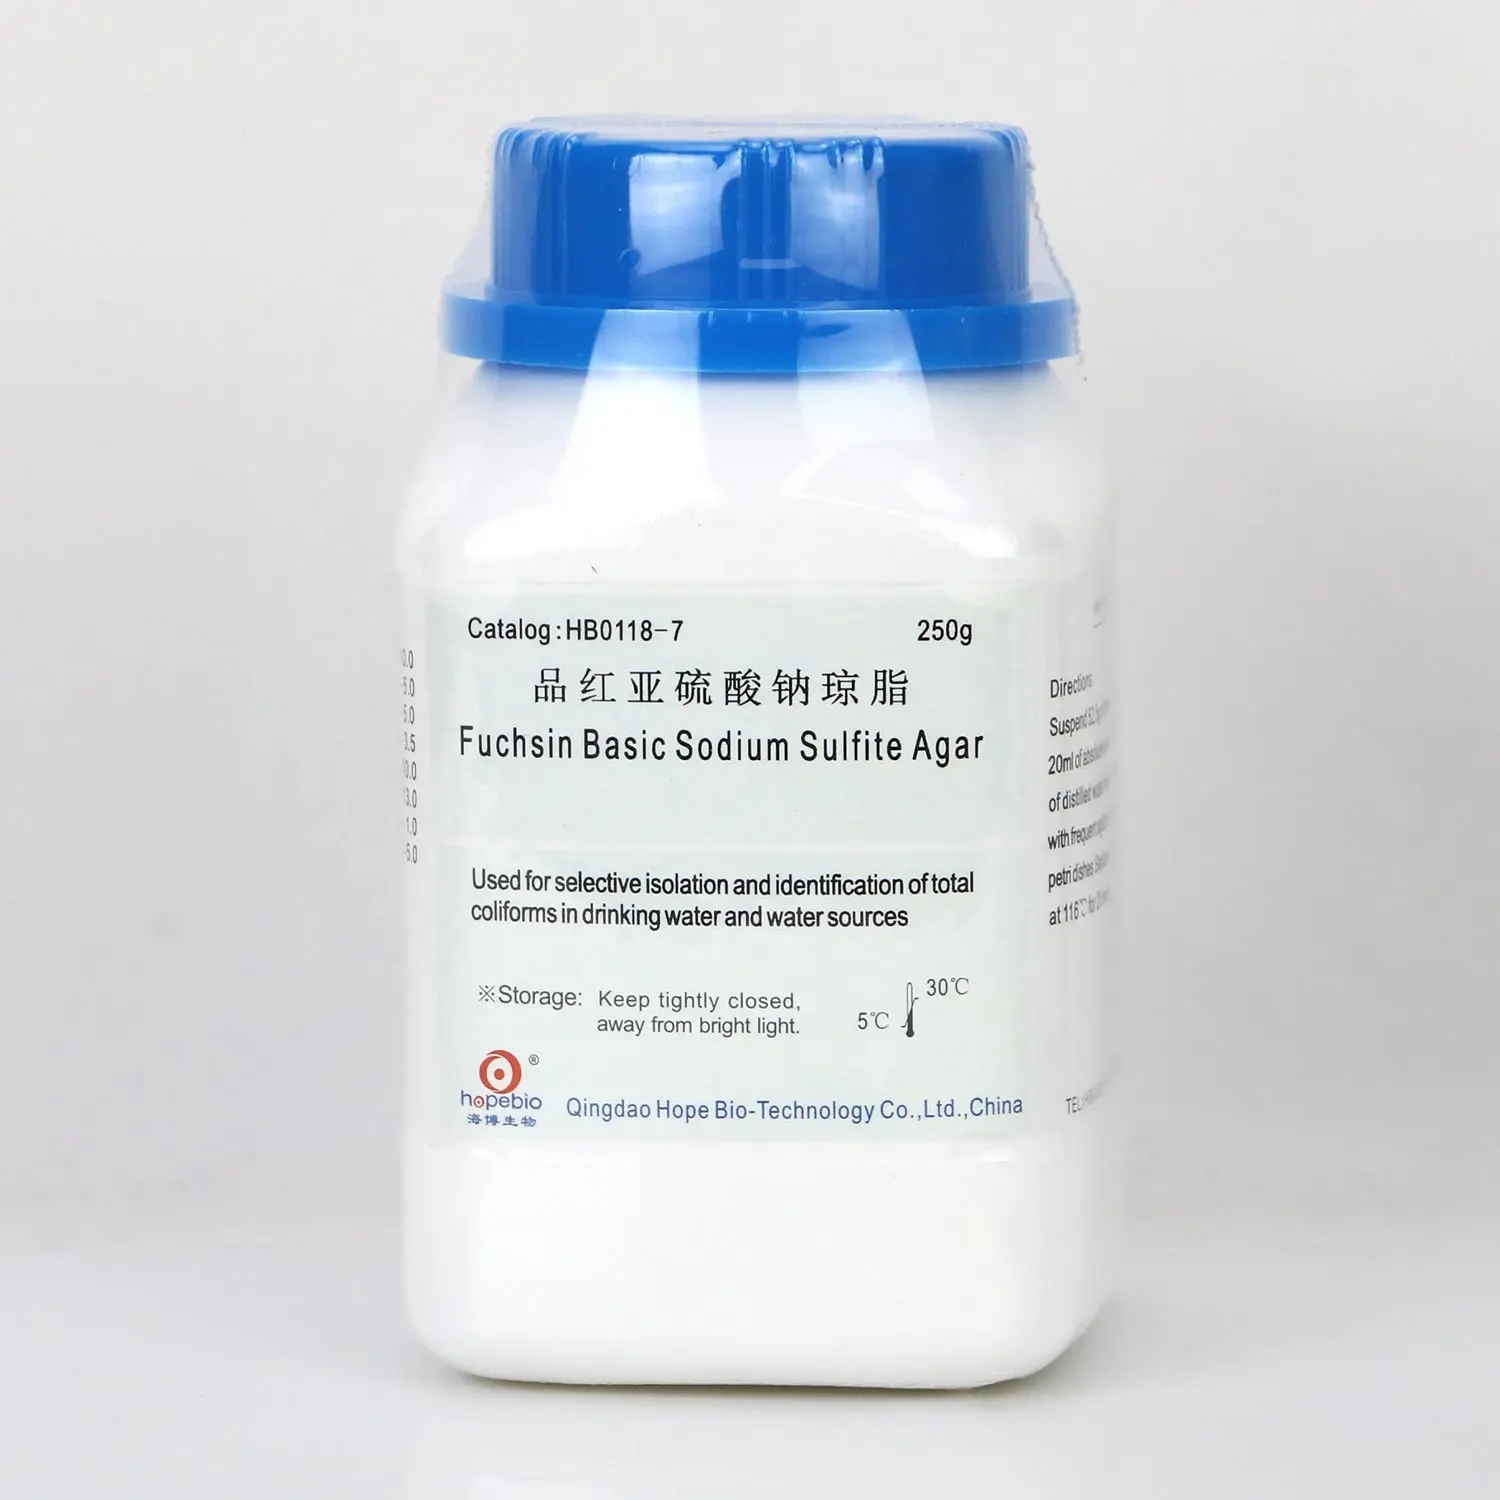 ♡ Sin Basic Sodium sulfit Agar untuk isolasi selektif dan identifikasi total coliform dalam air minum